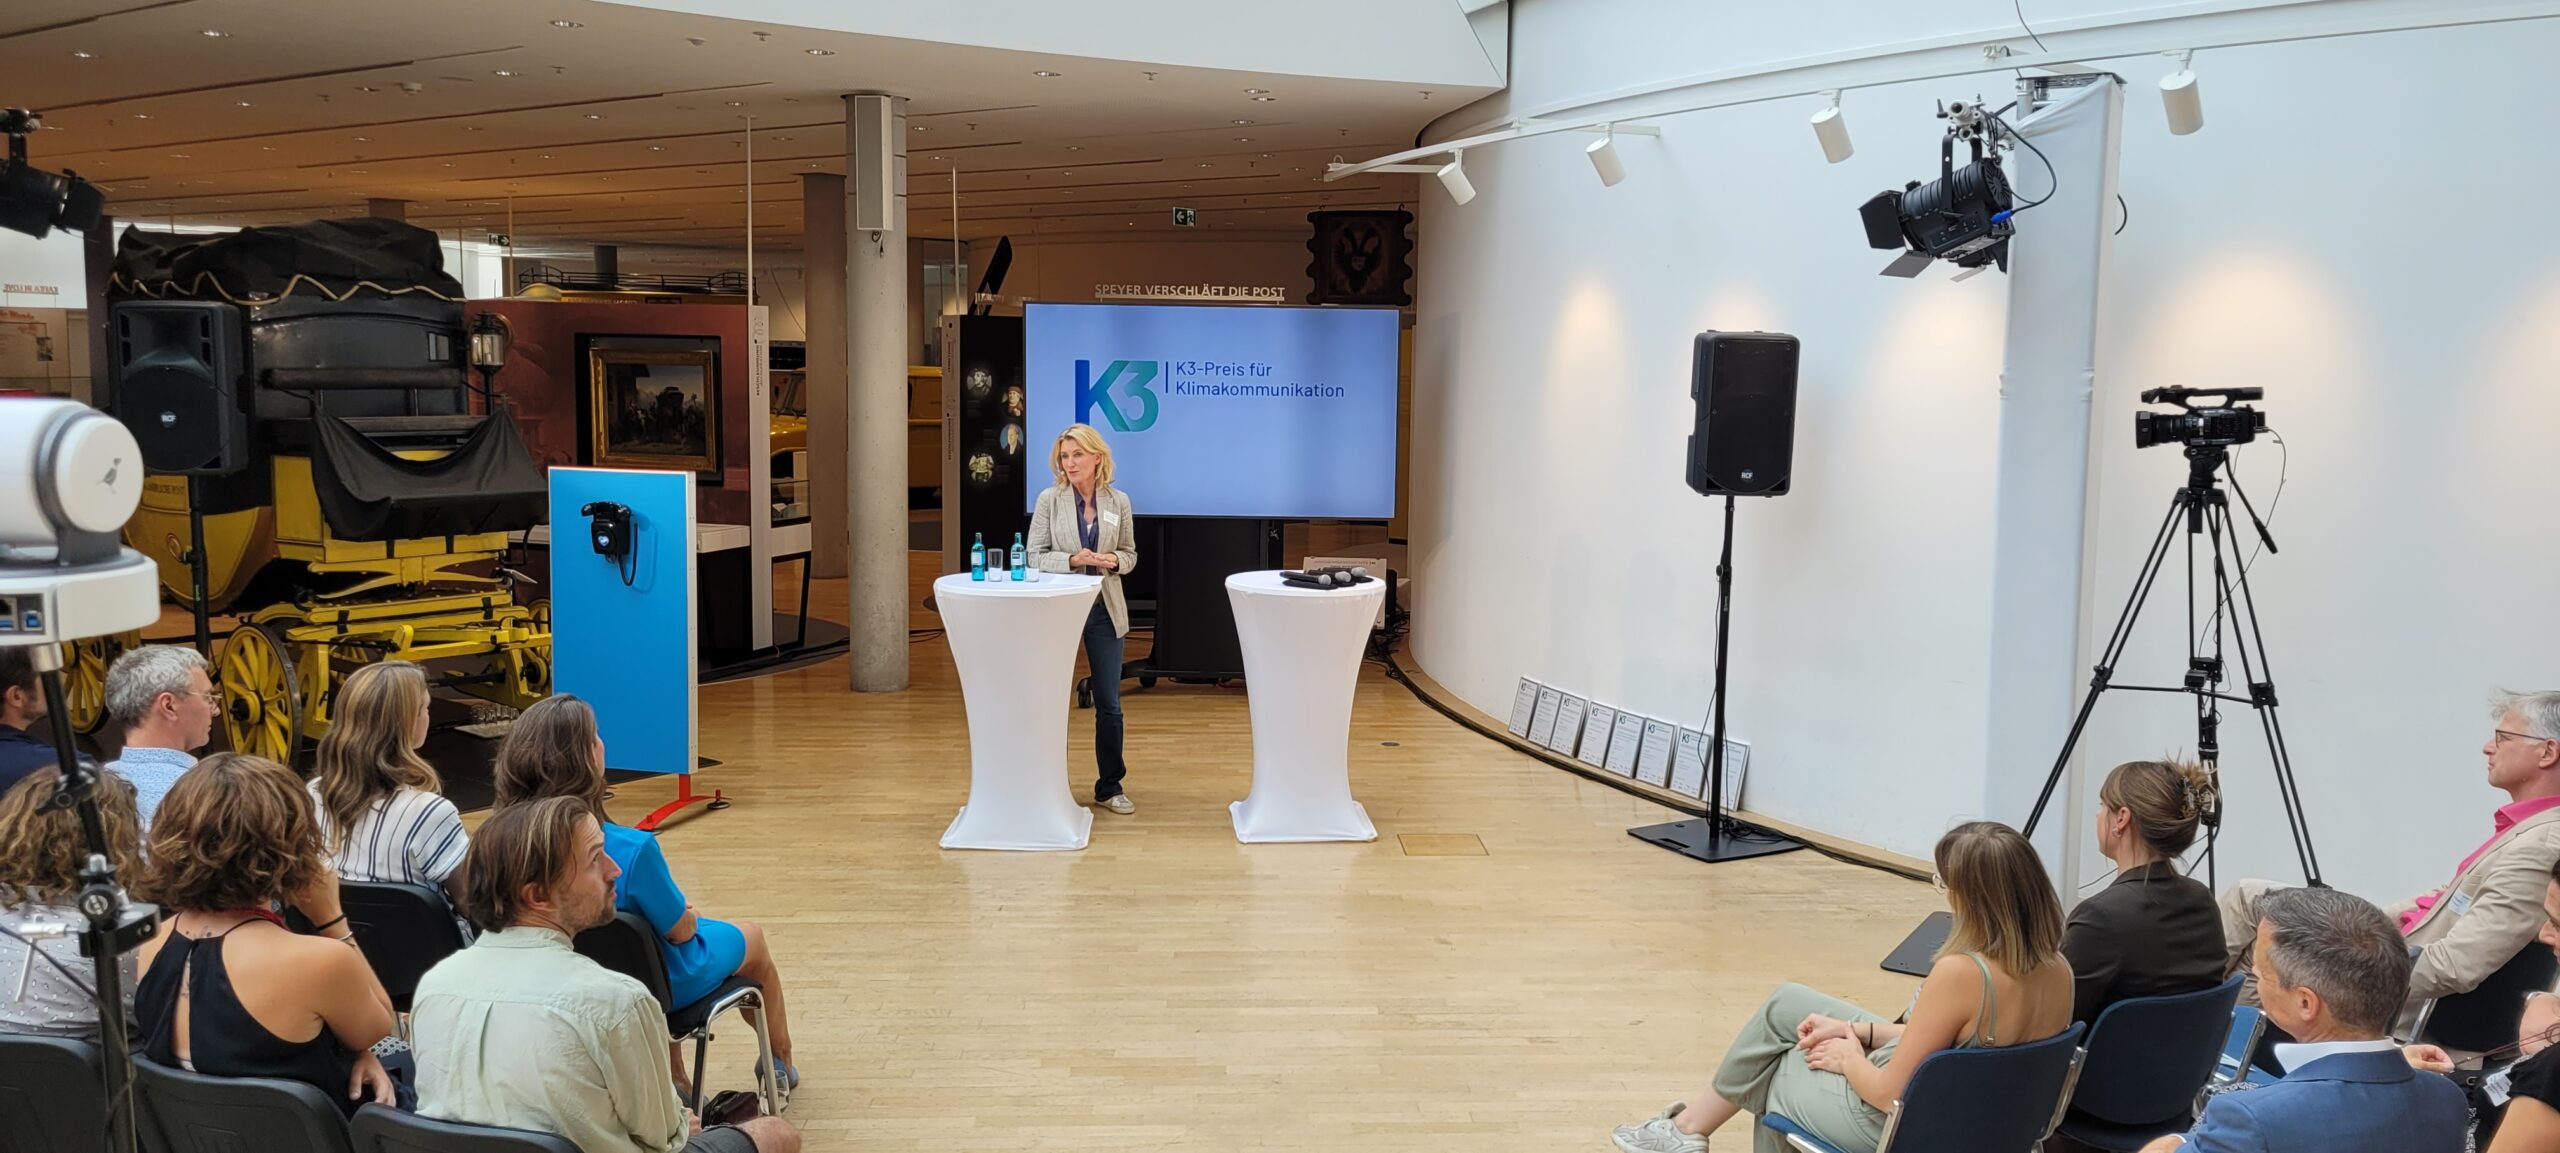 Maria Furtwängler eröffnet im Lichthof des Museums für Kommunikation den K3-Preis